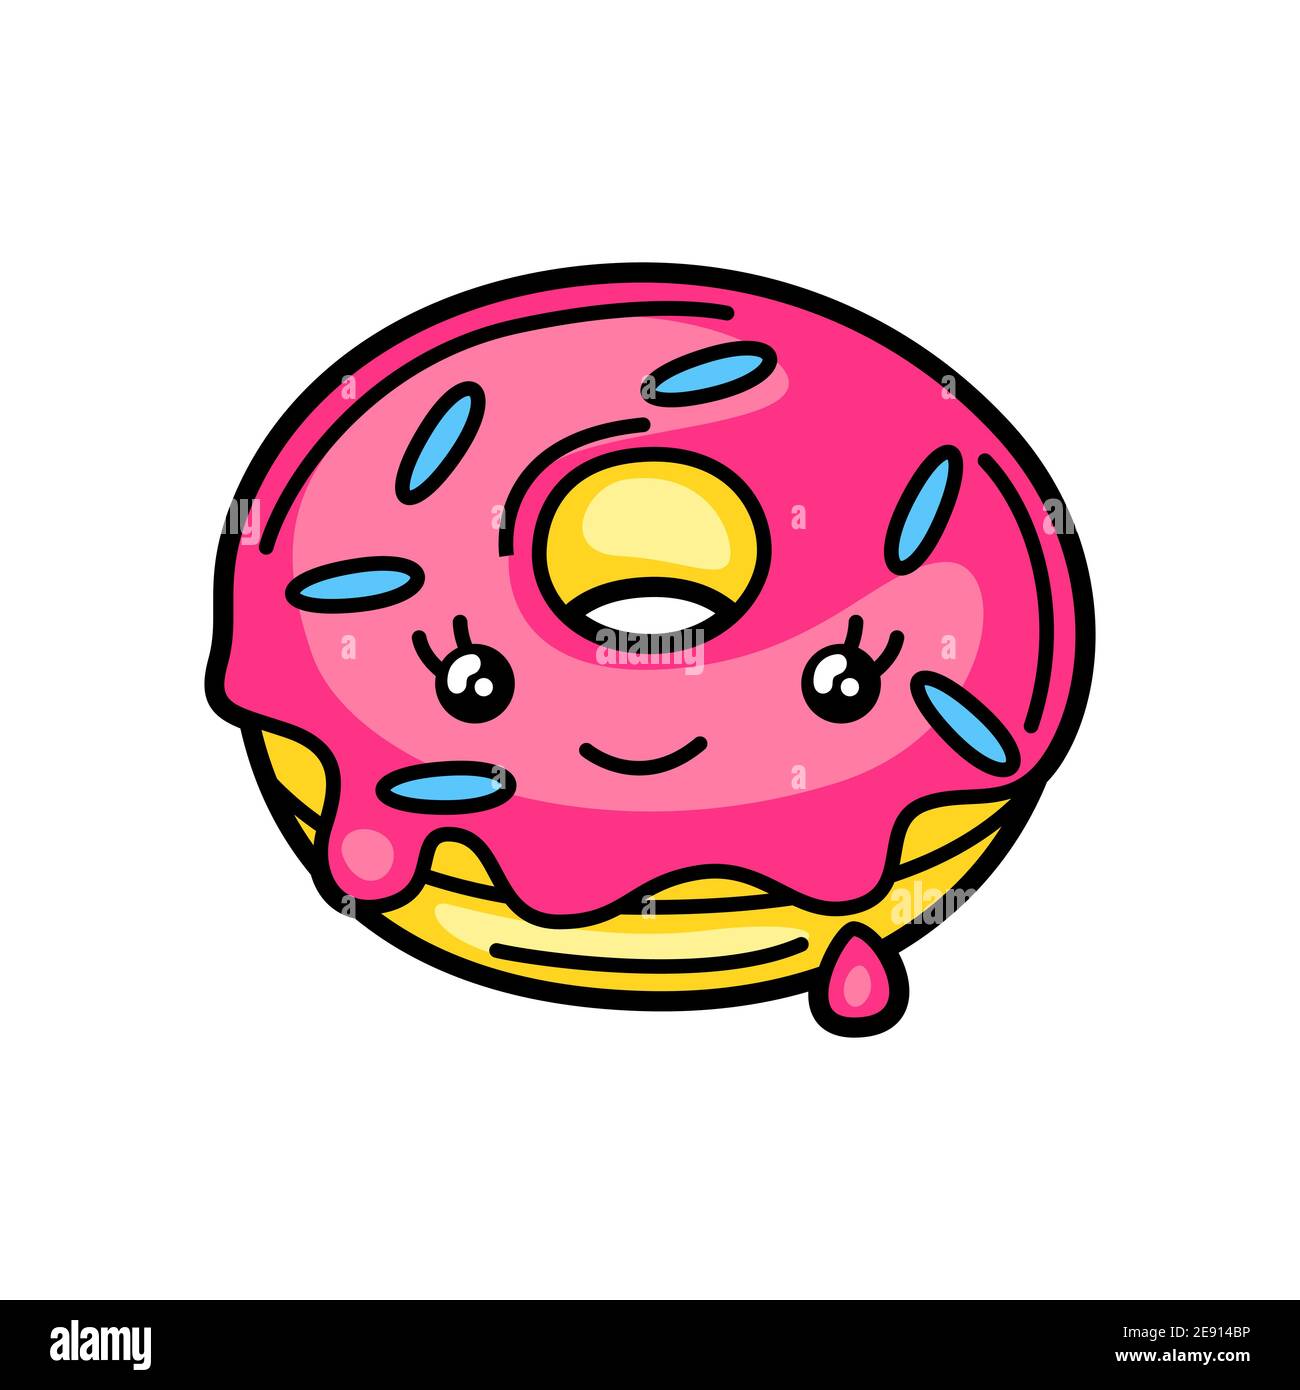 Kawaii illustration of donut. Stock Vector